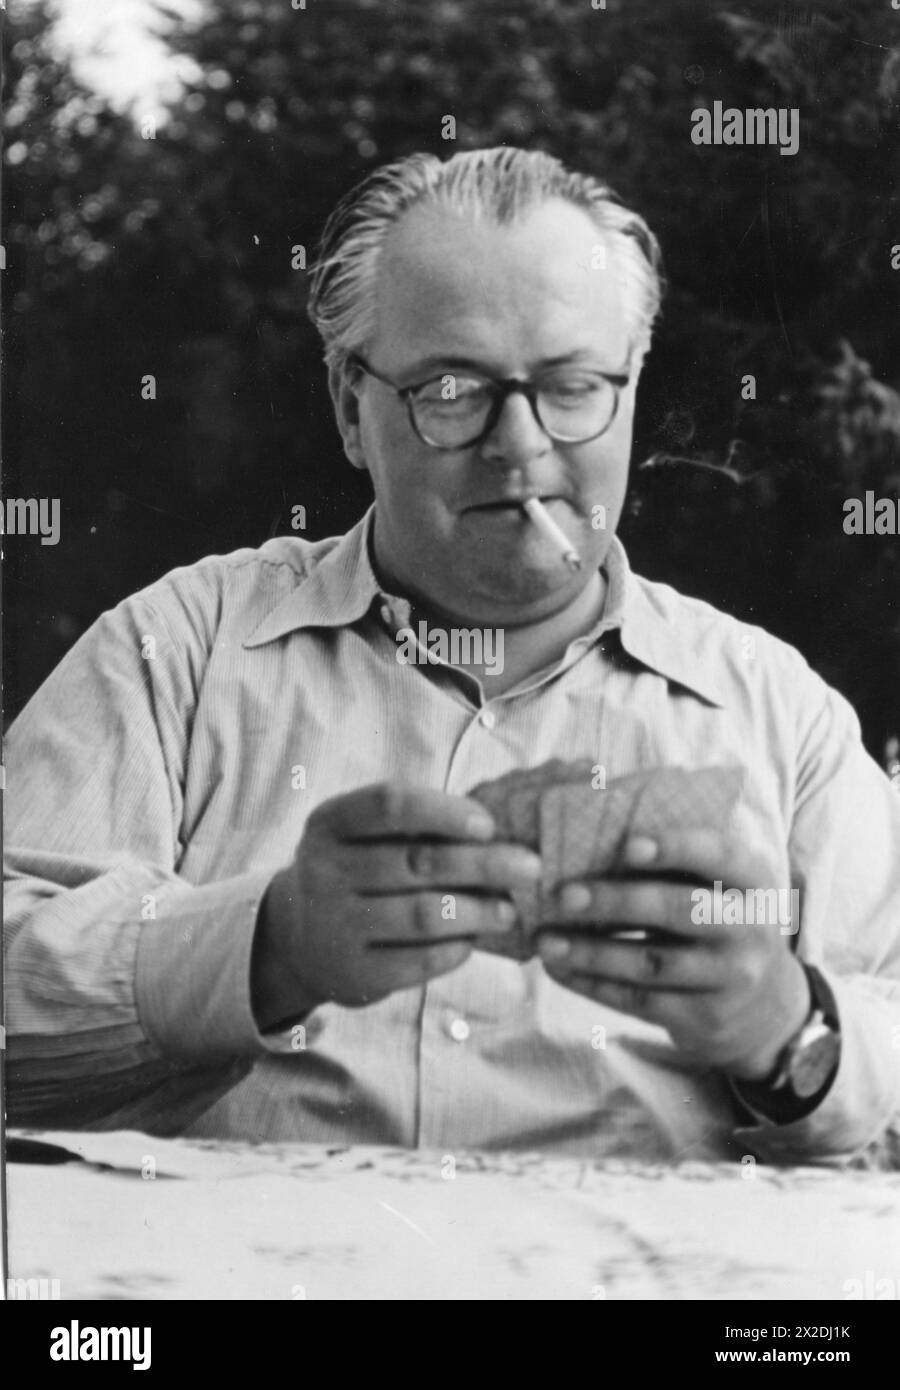 Schroeder, Friedrich Hermann Dietrich, 6.8.1910 - 25.9,1972, compositeur allemand, pendant le jeu de cartes, INFORMATIONS-AUTORISATION-DROITS-SUPPLÉMENTAIRES-NON-DISPONIBLES Banque D'Images